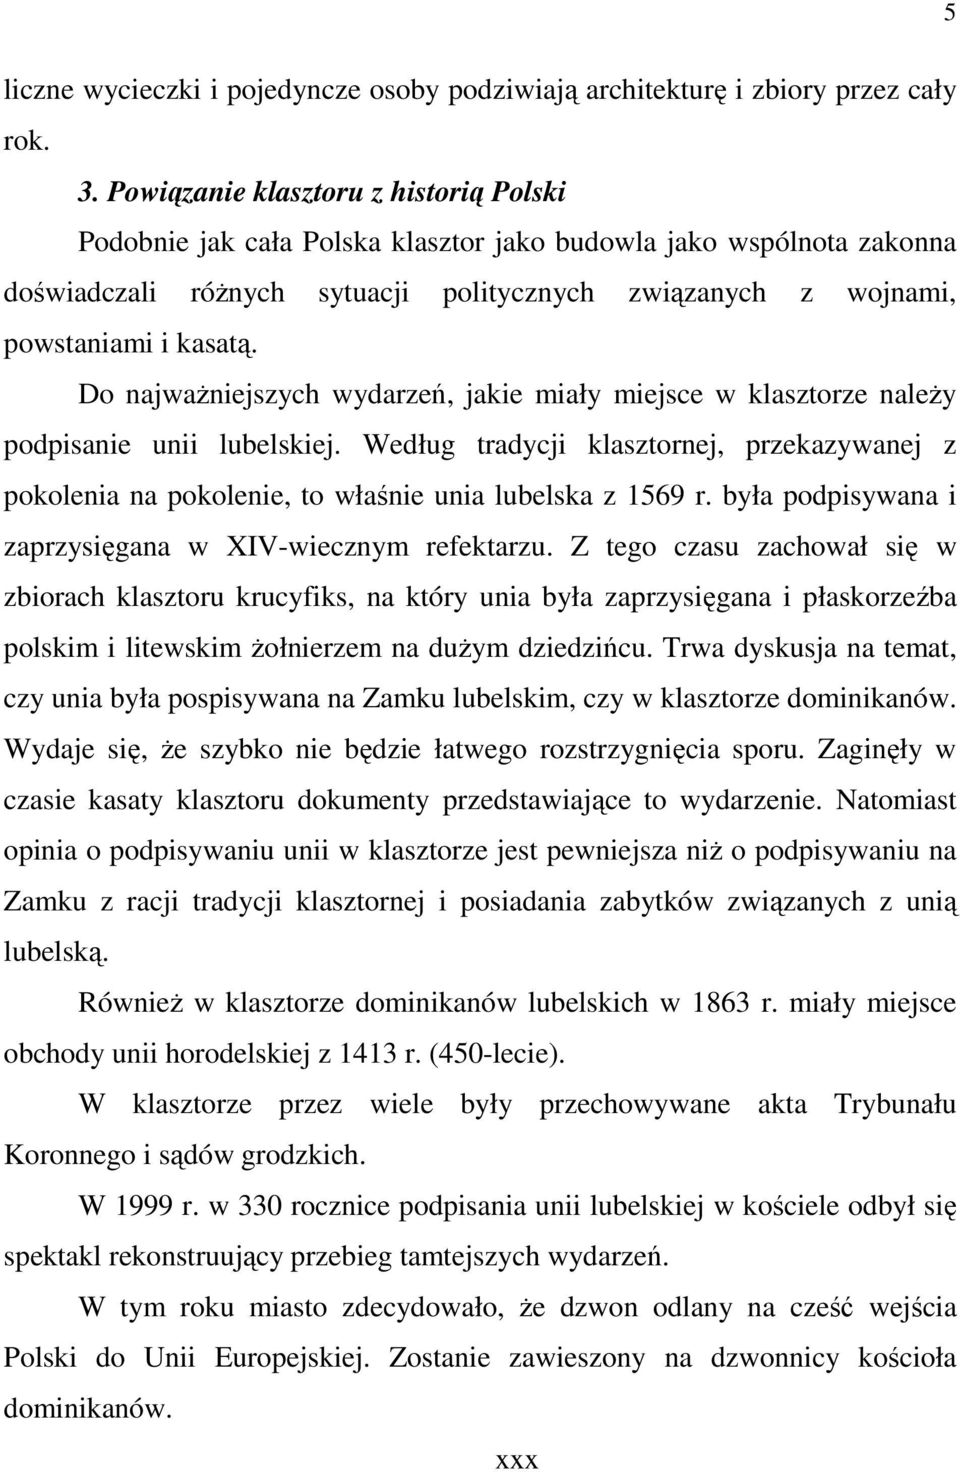 Do najwaŝniejszych wydarzeń, jakie miały miejsce w klasztorze naleŝy podpisanie unii lubelskiej. Według tradycji klasztornej, przekazywanej z pokolenia na pokolenie, to właśnie unia lubelska z 1569 r.